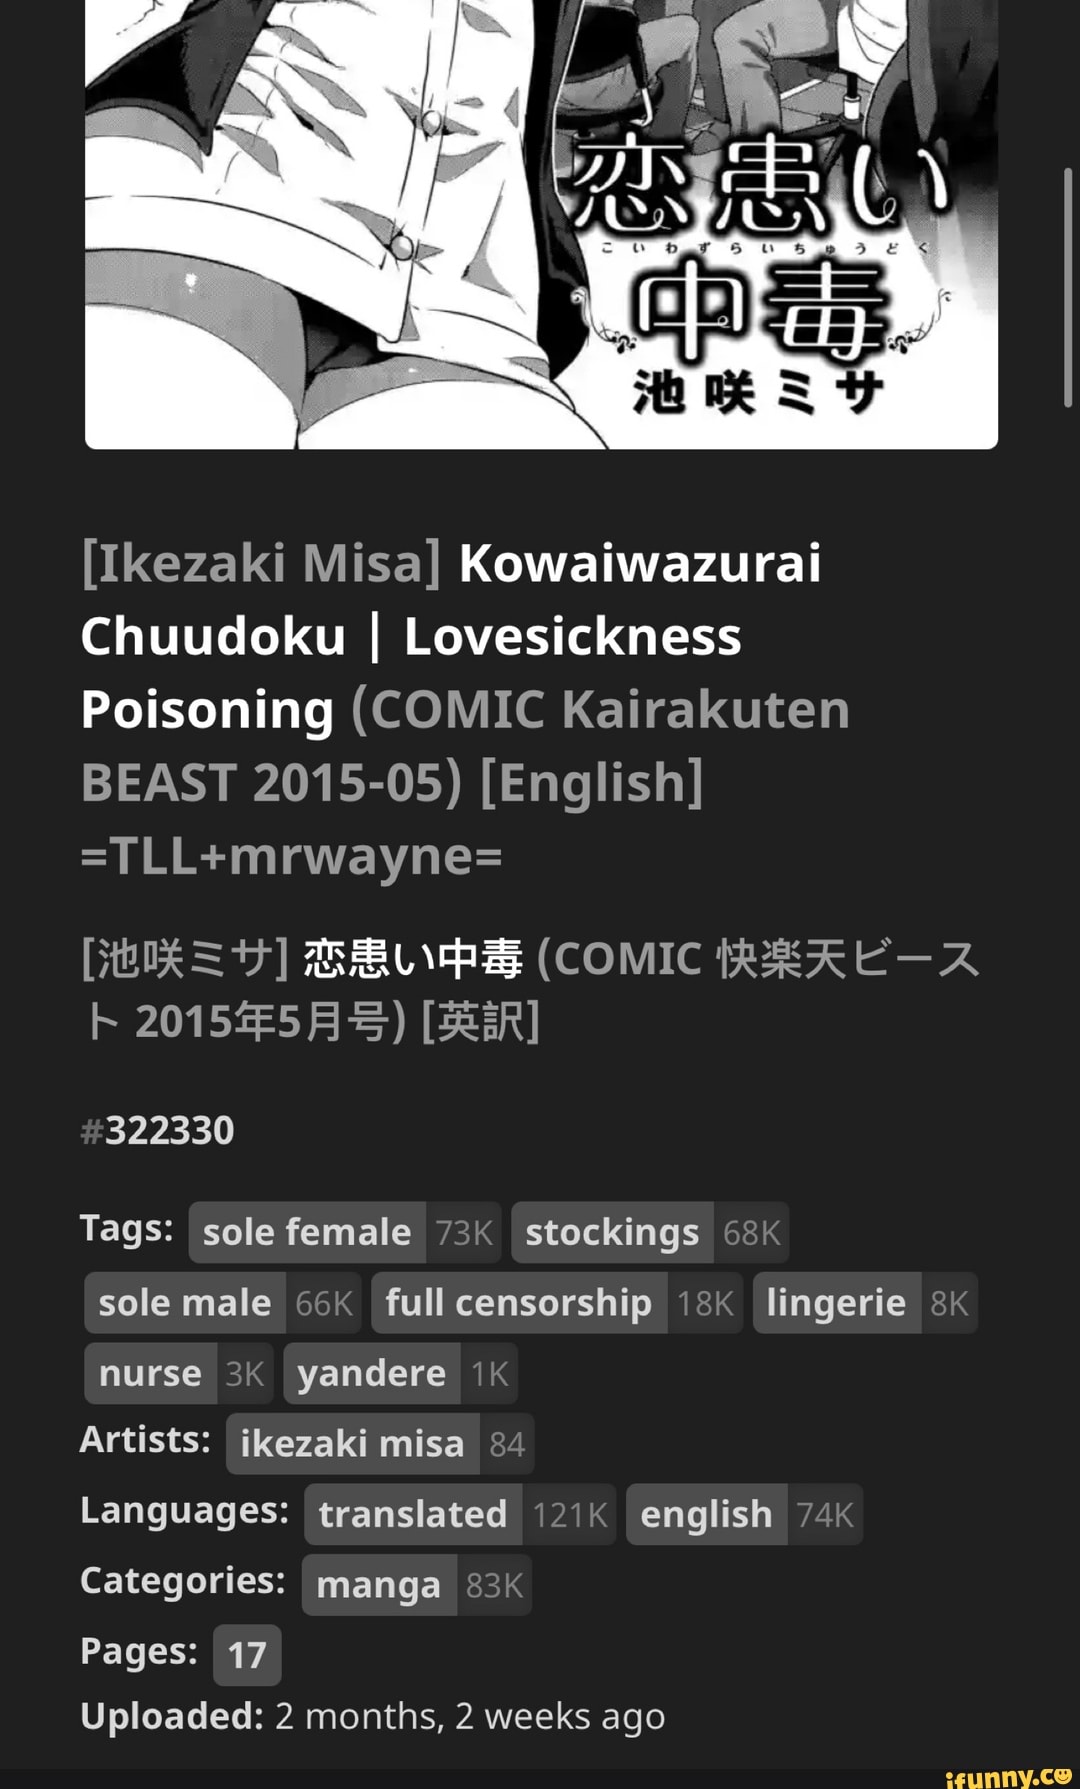 Ikezaki Misa] Kowaiwazurai Chuudoku I Lovesickness Poisoning